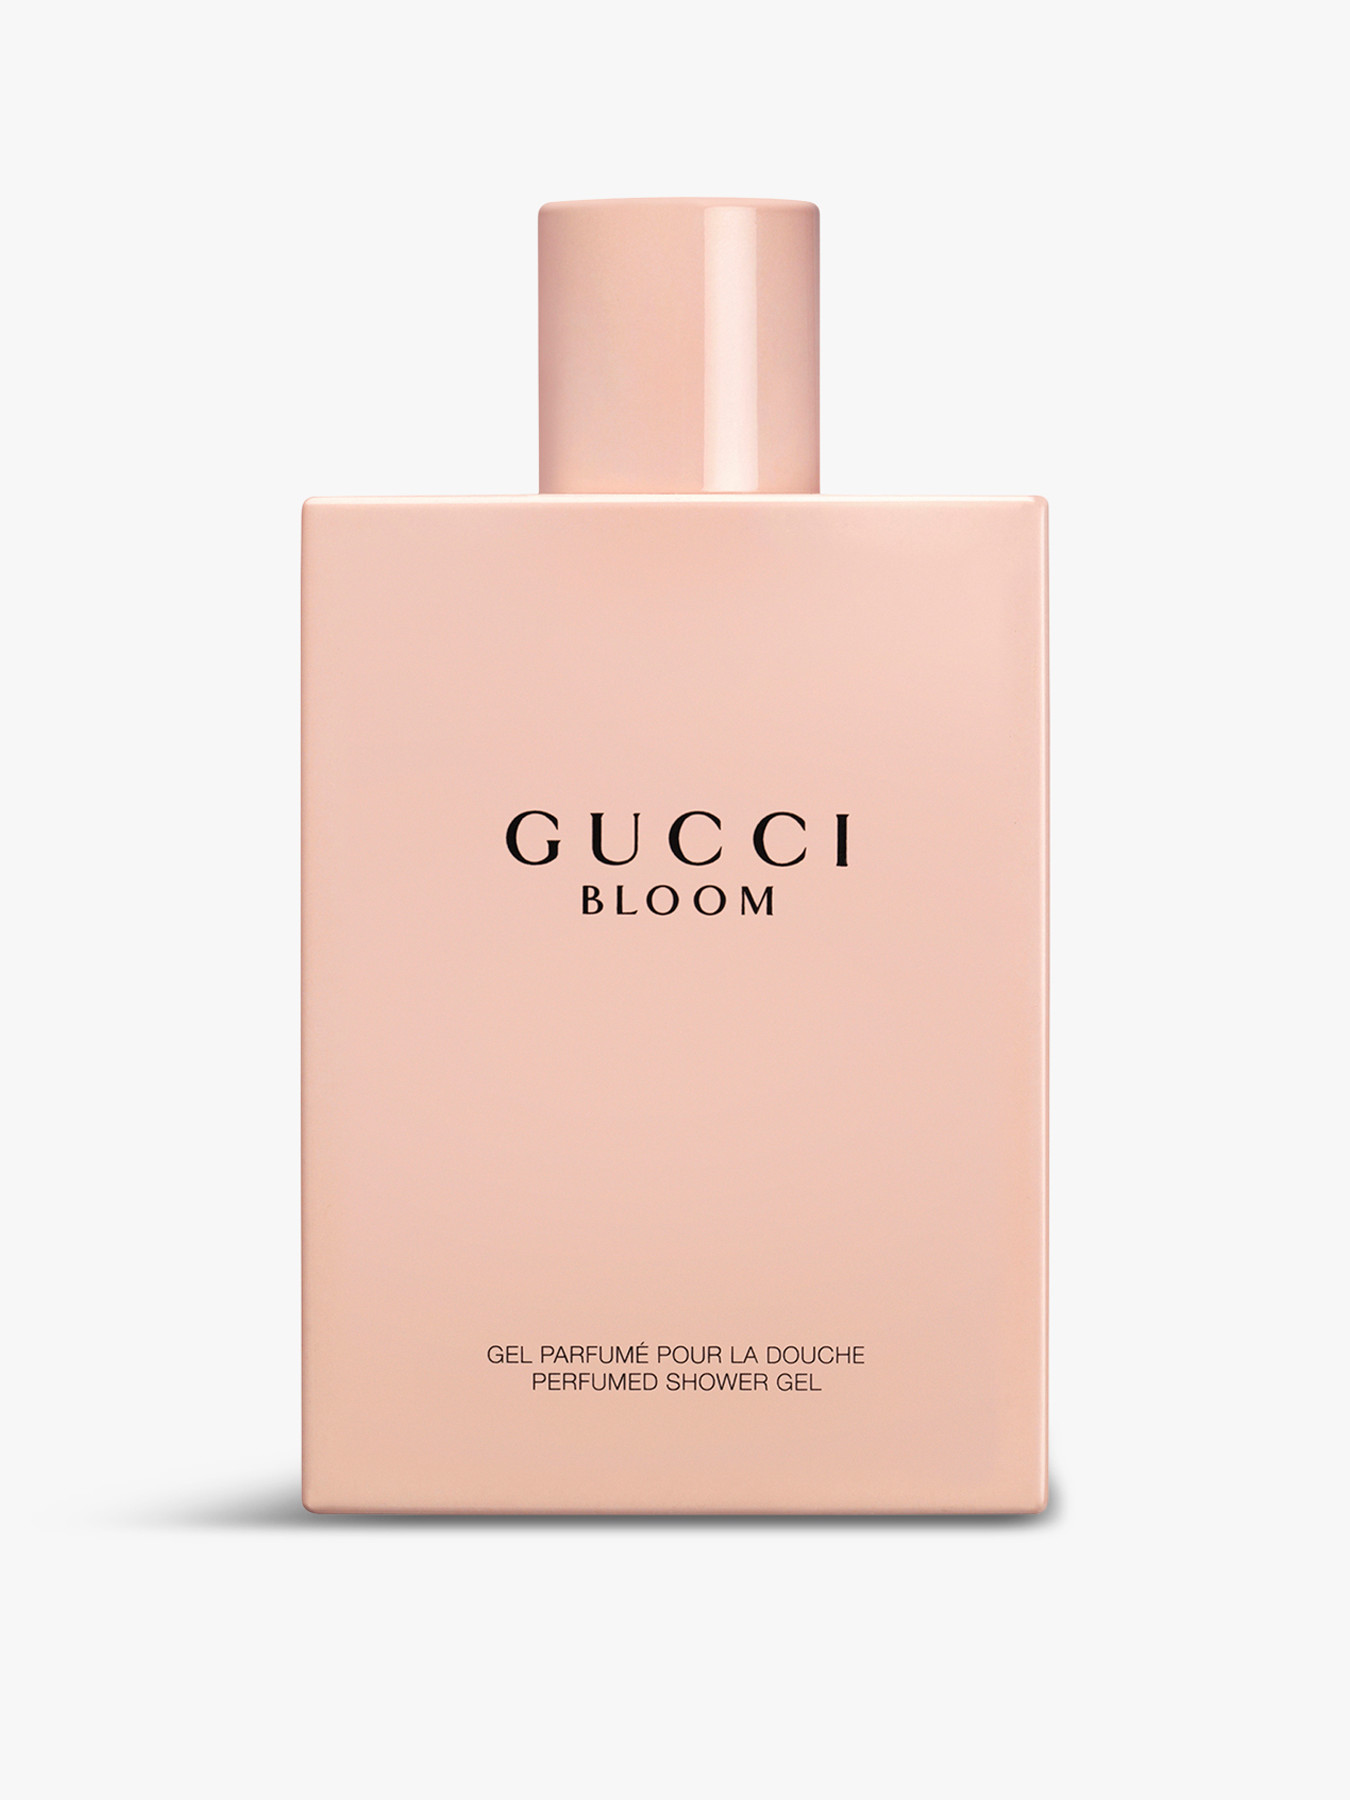 GUCCI BEAUTY Bloom Eau de Parfum For Her Shower Gel 200ml | Fenwick